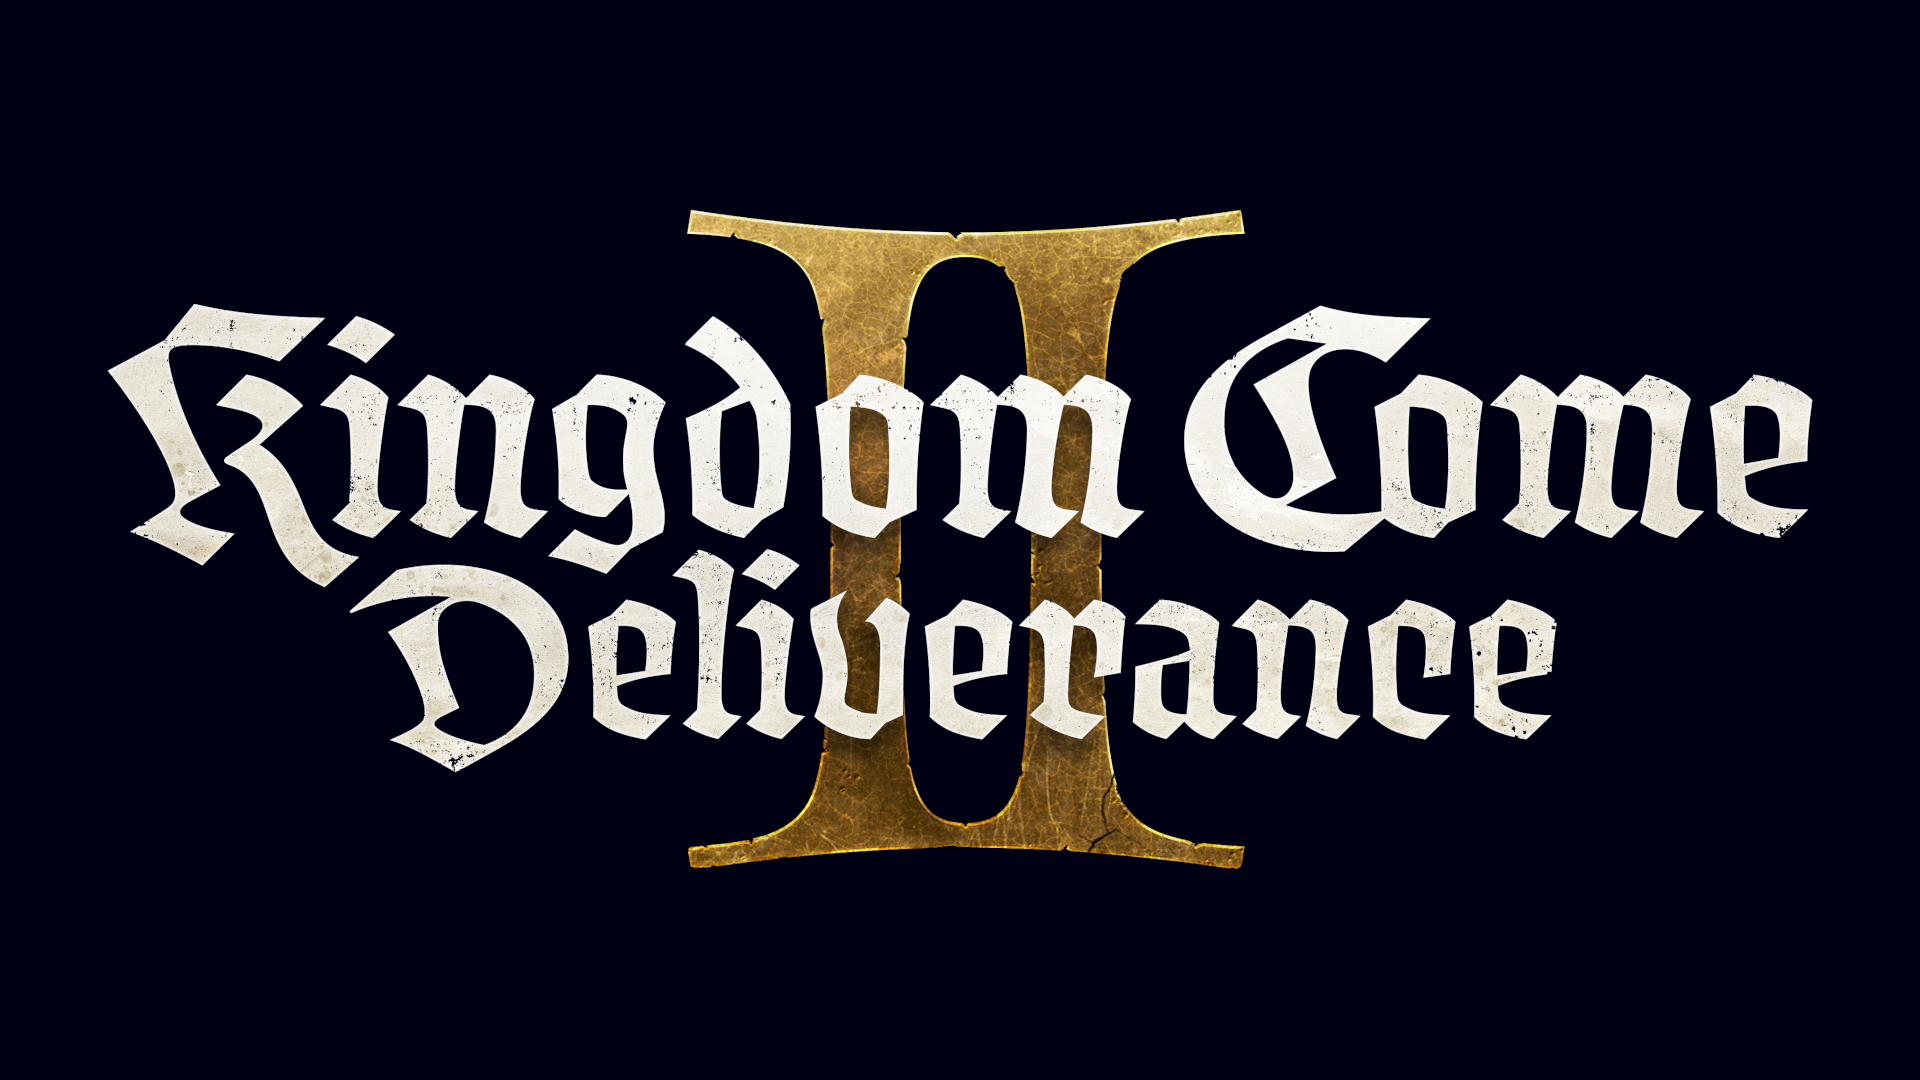 Kingdom Come: Deliverance 2 dévoilé, un géant deux fois plus grand que son prédécesseur